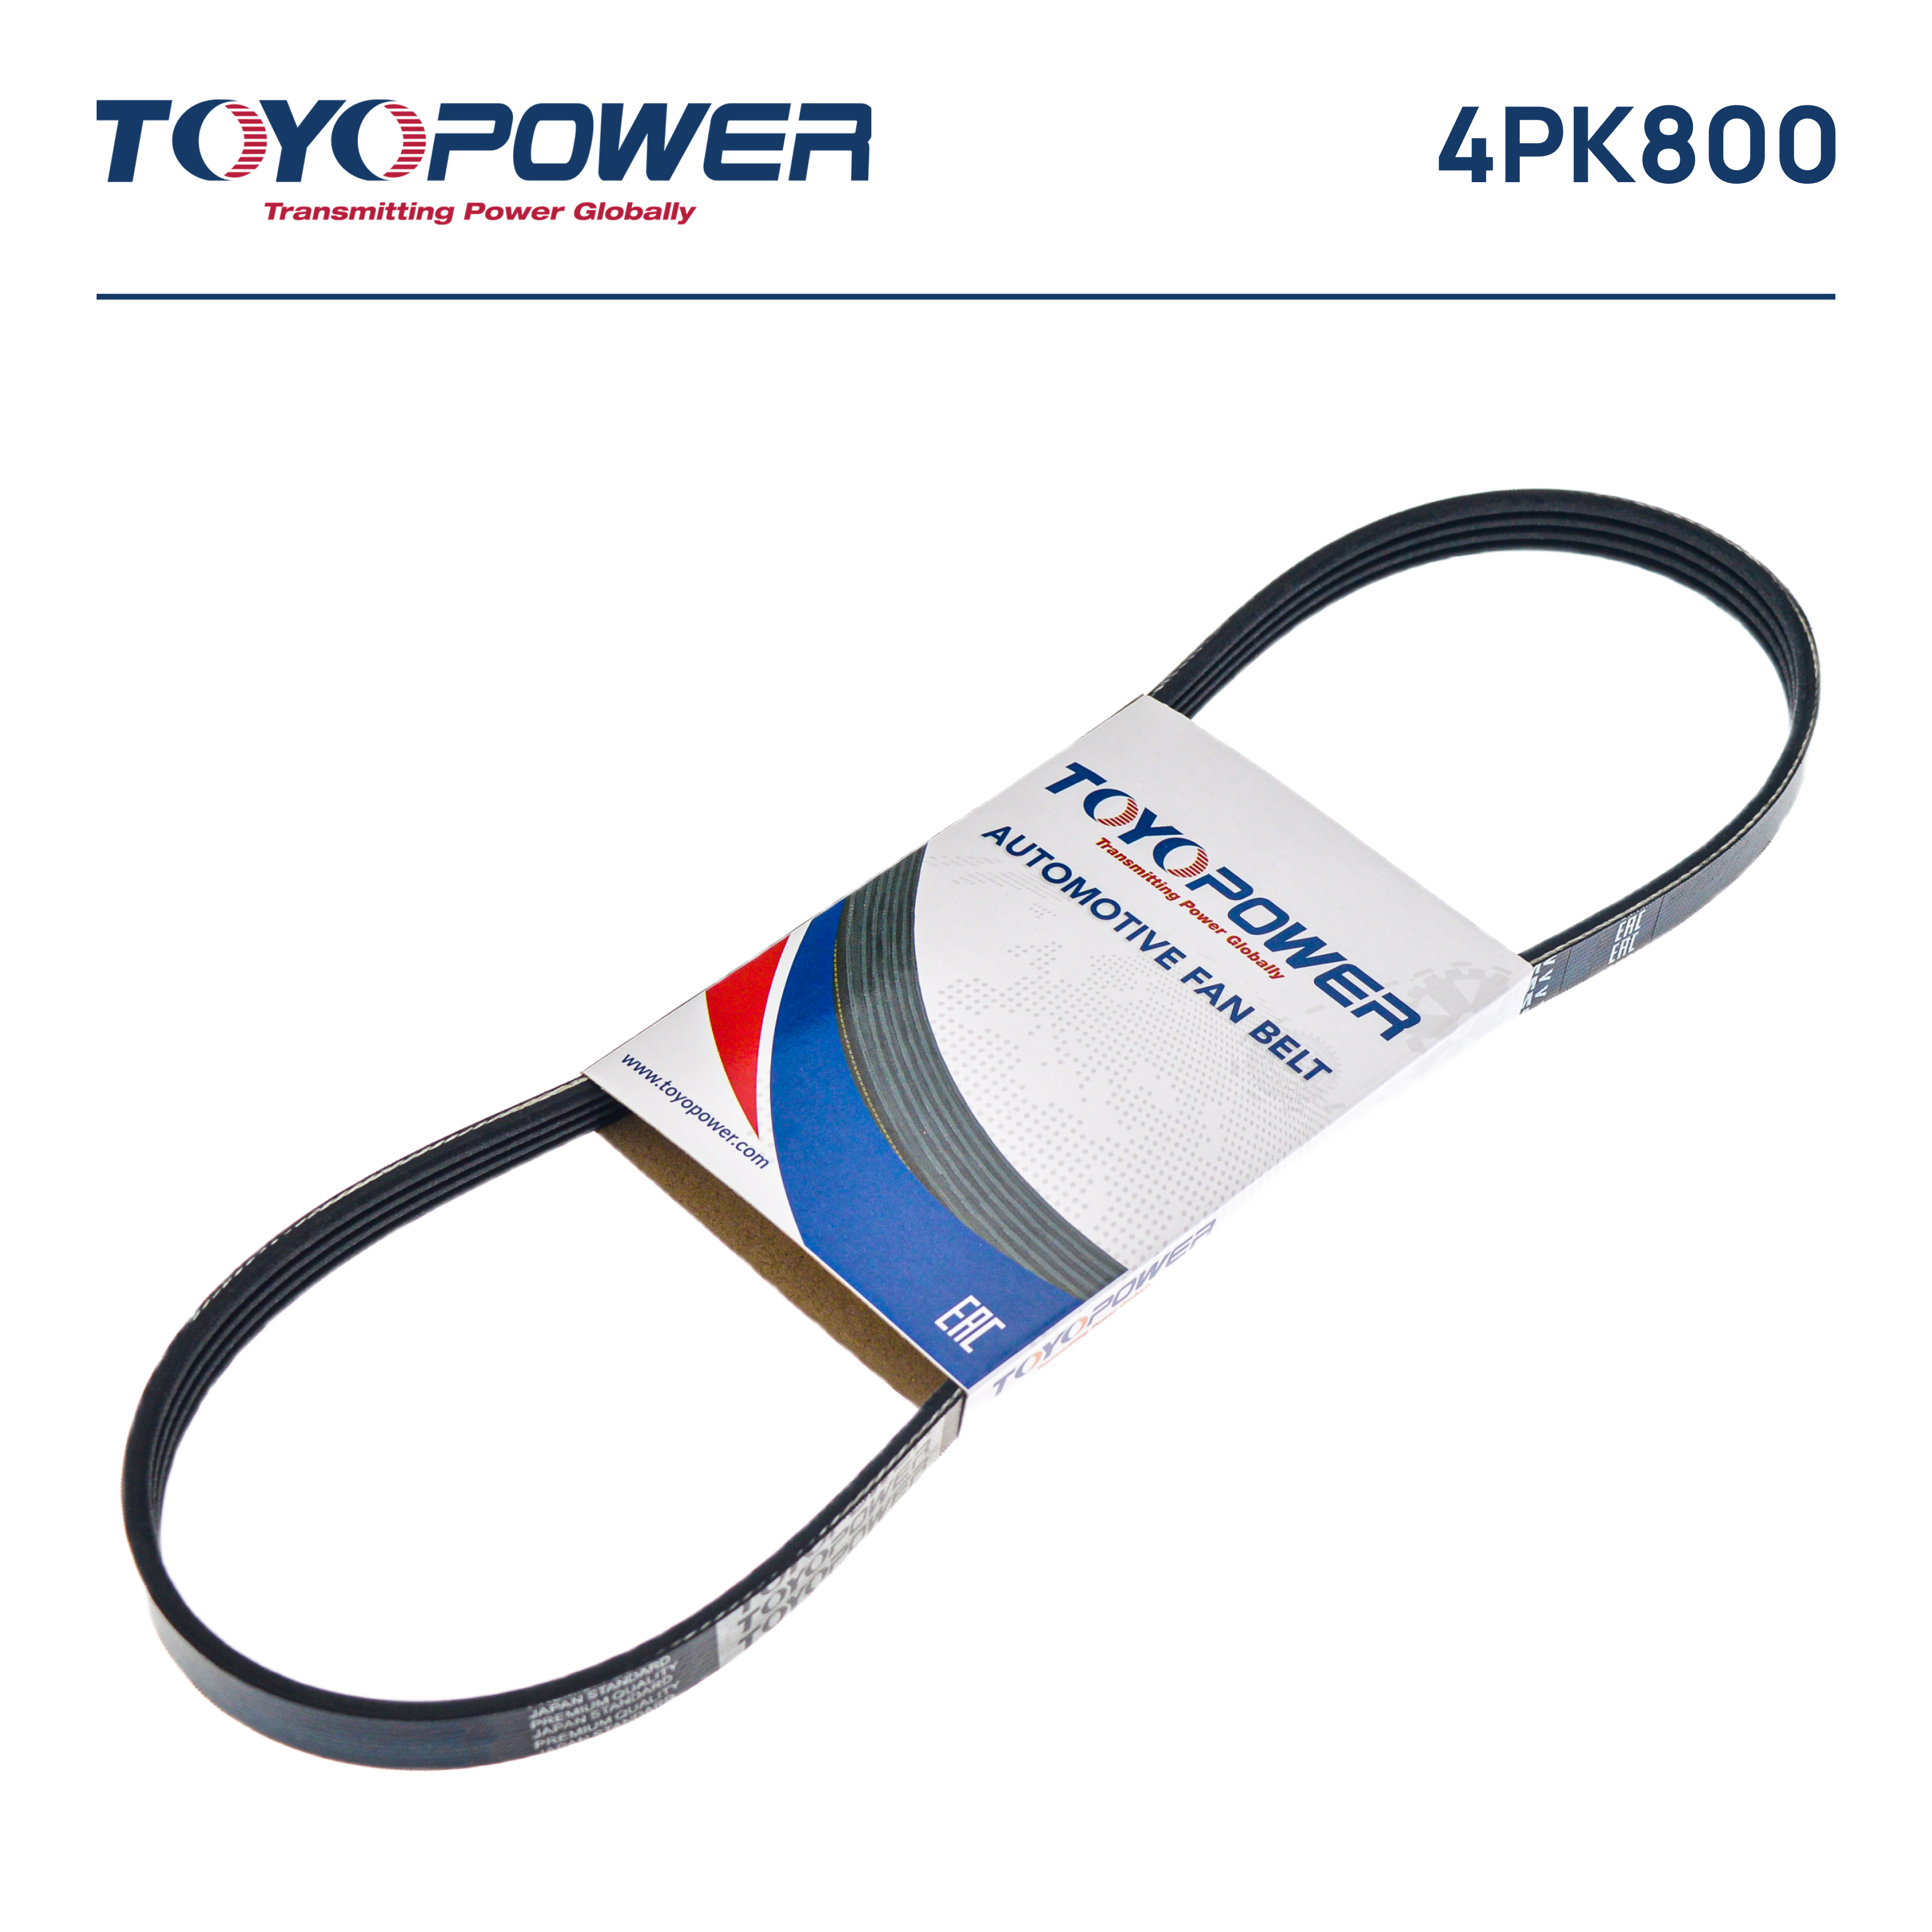 Ремень поликлиновый - Toyopower 4PK800